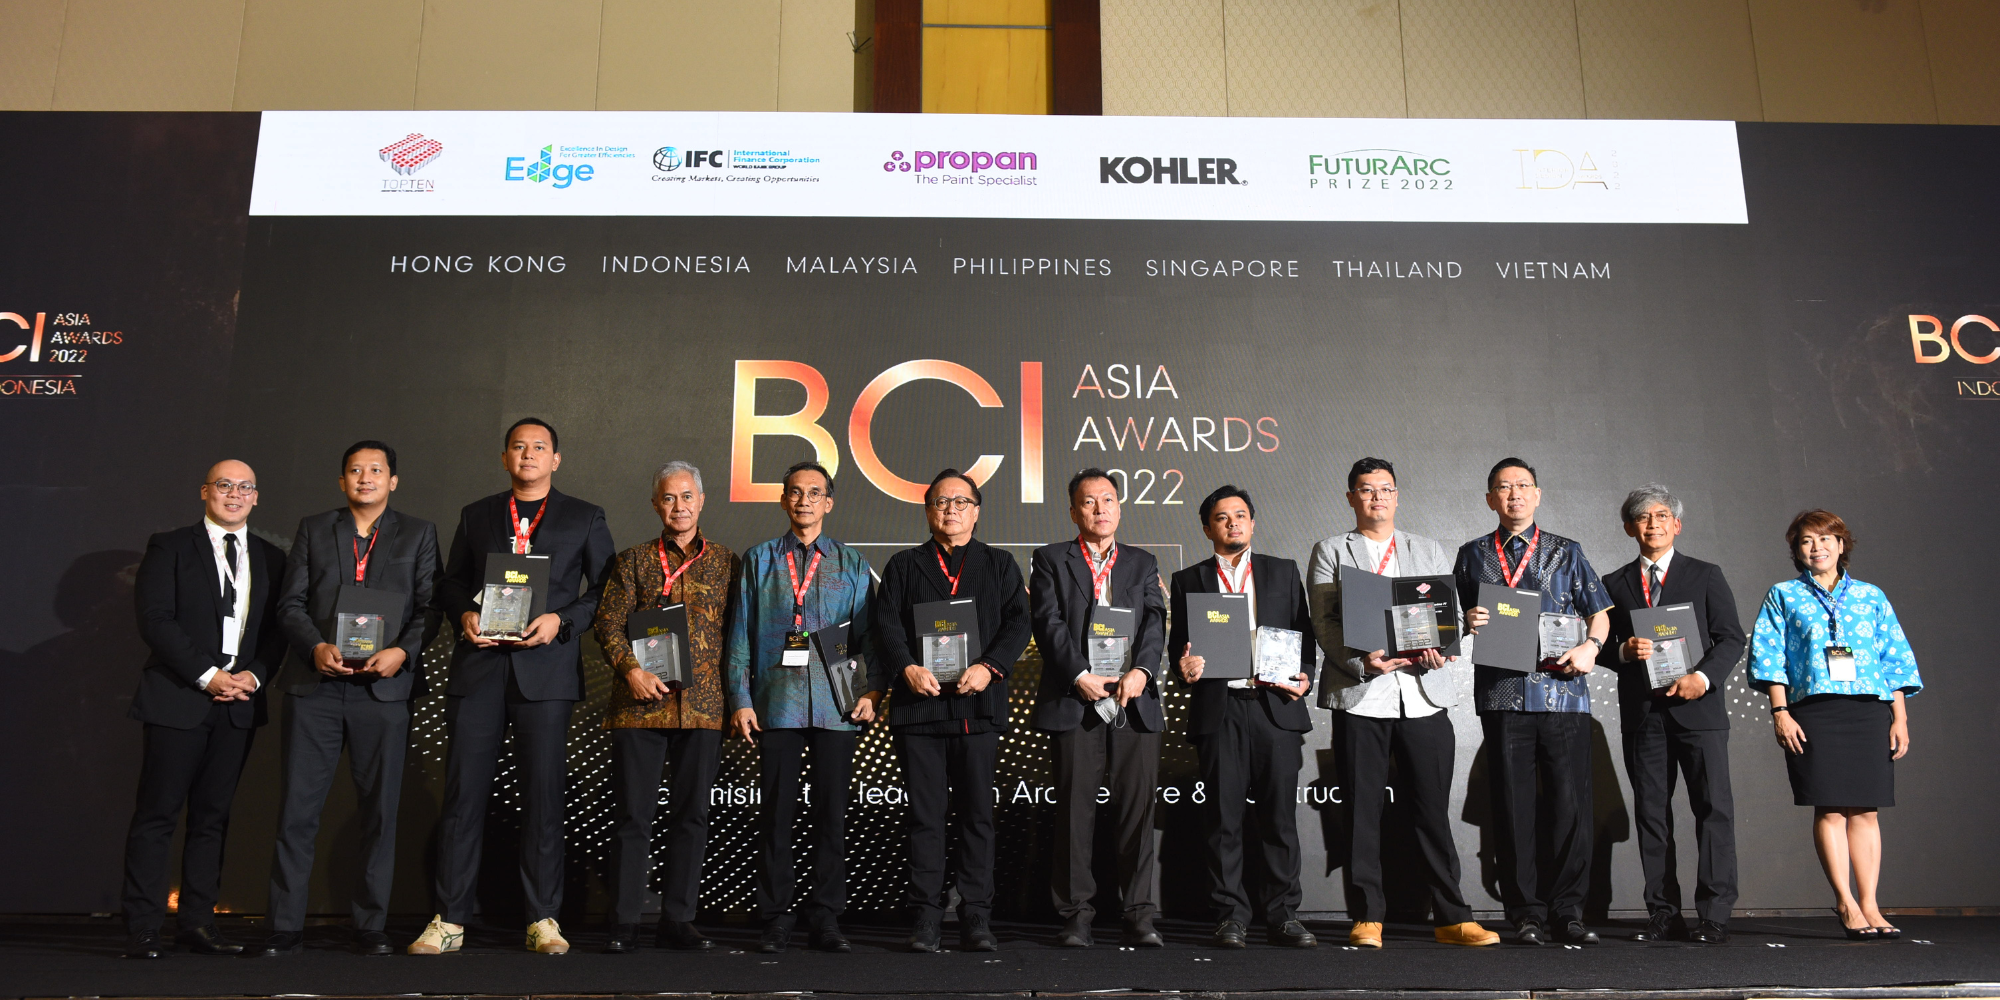 Hình ảnh nổi bật cho “ BCI Asia Awards Indonesia 2022 ”